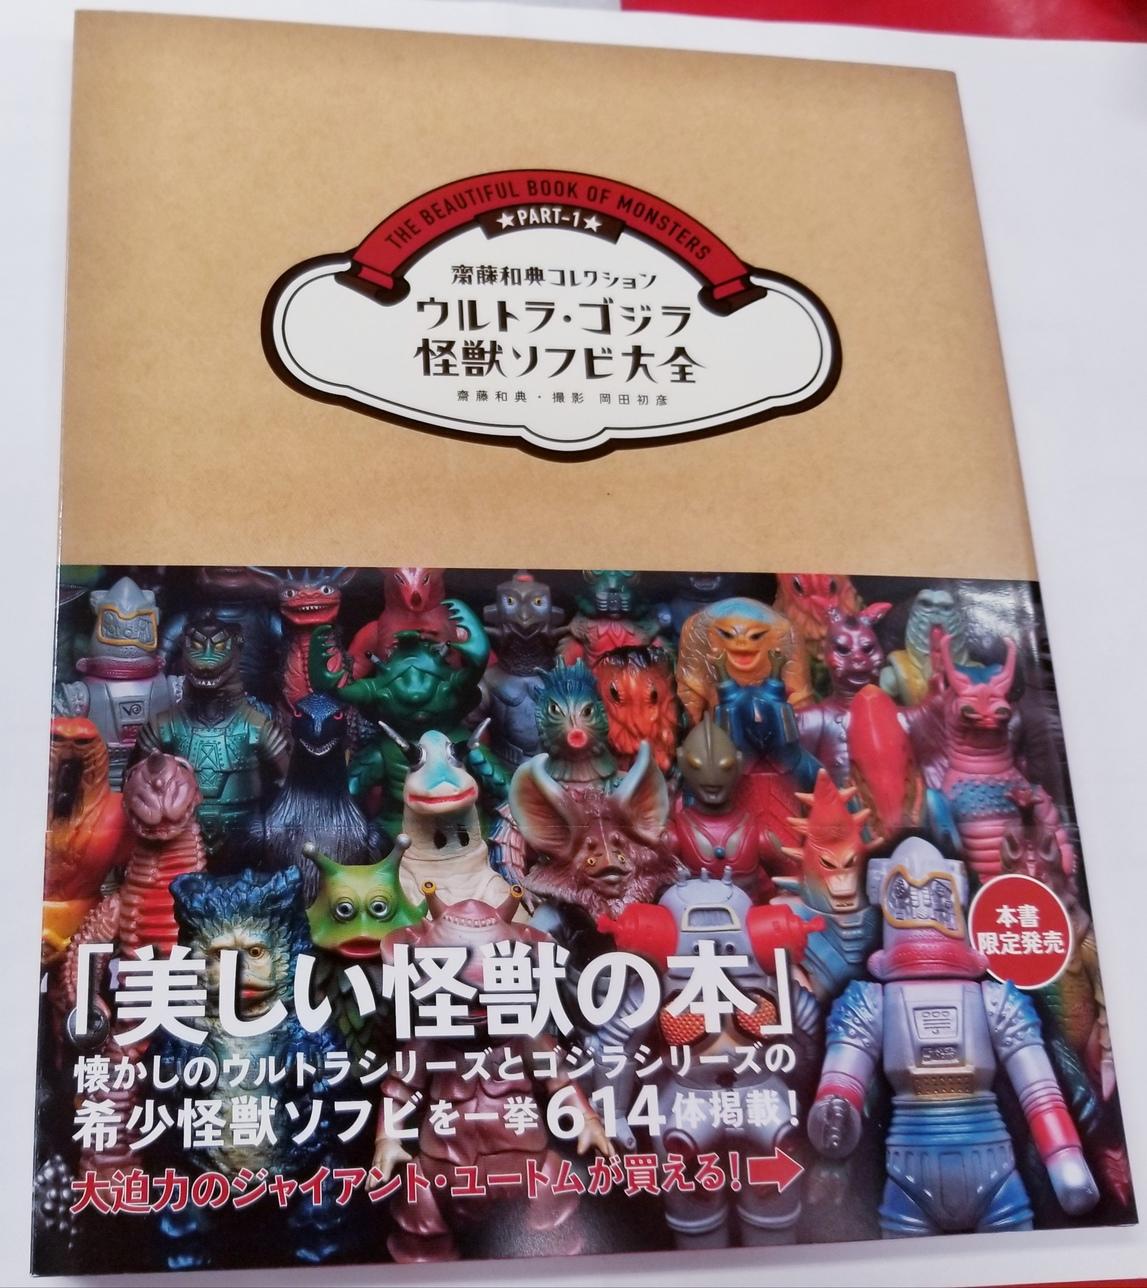 ウルトラ・ゴジラ怪獣ソフビ大全 : 齋藤和典コレクション